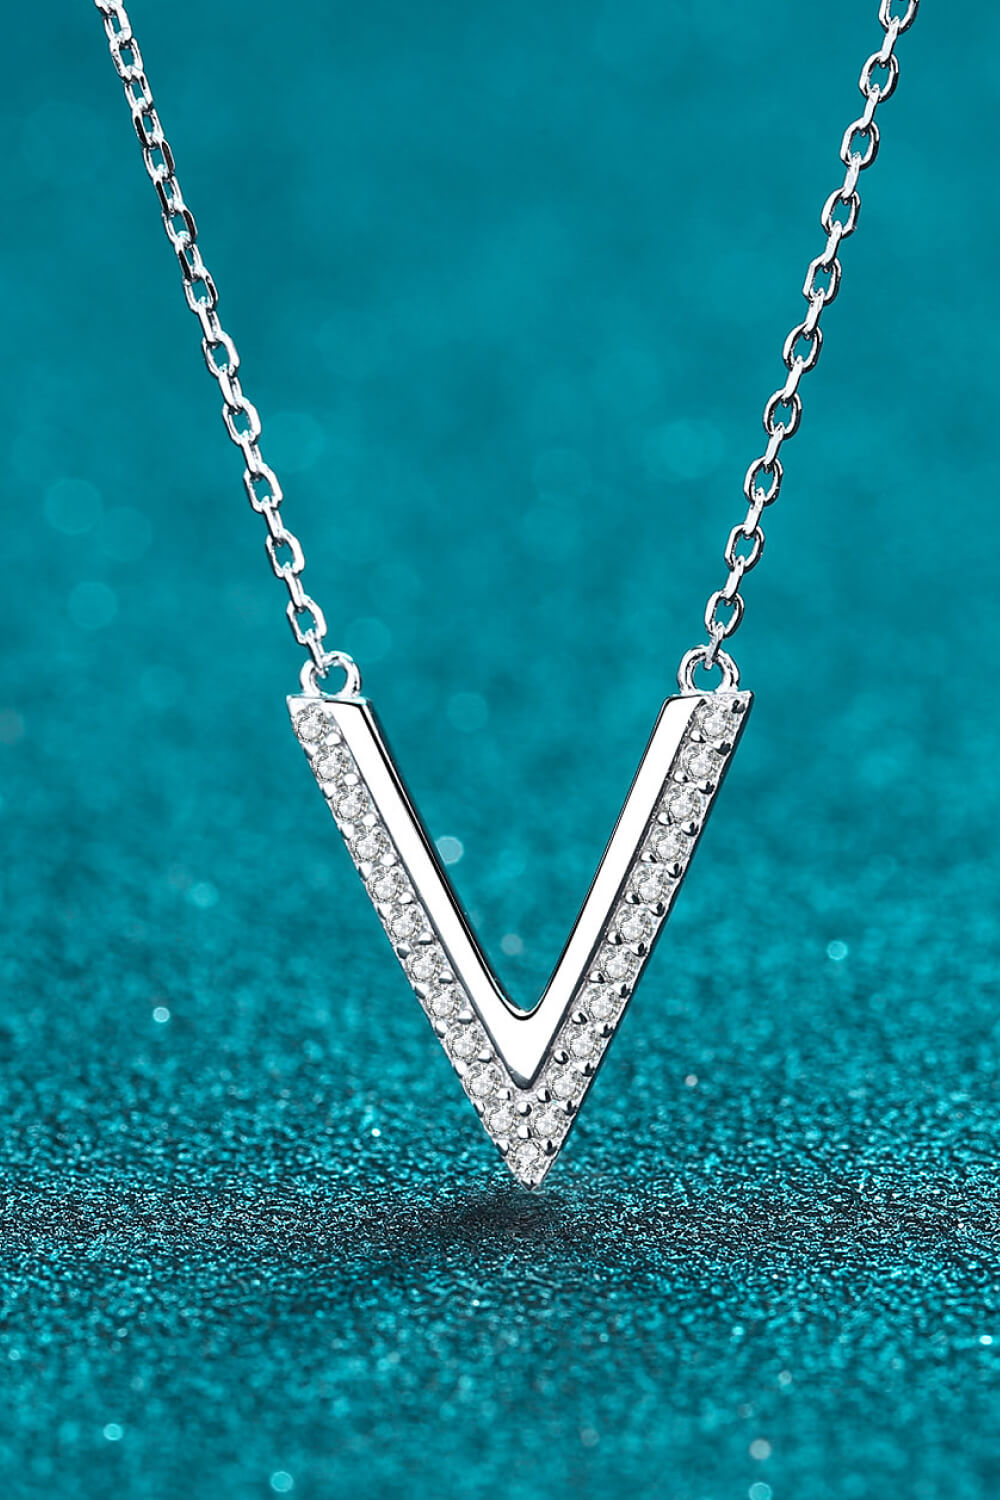 Dream Of Love Simple Fashion Silver Pendant Necklace V Letter Necklace -  Buy V Letter Necklace,V Letter Necklace,V Letter Necklace Product on